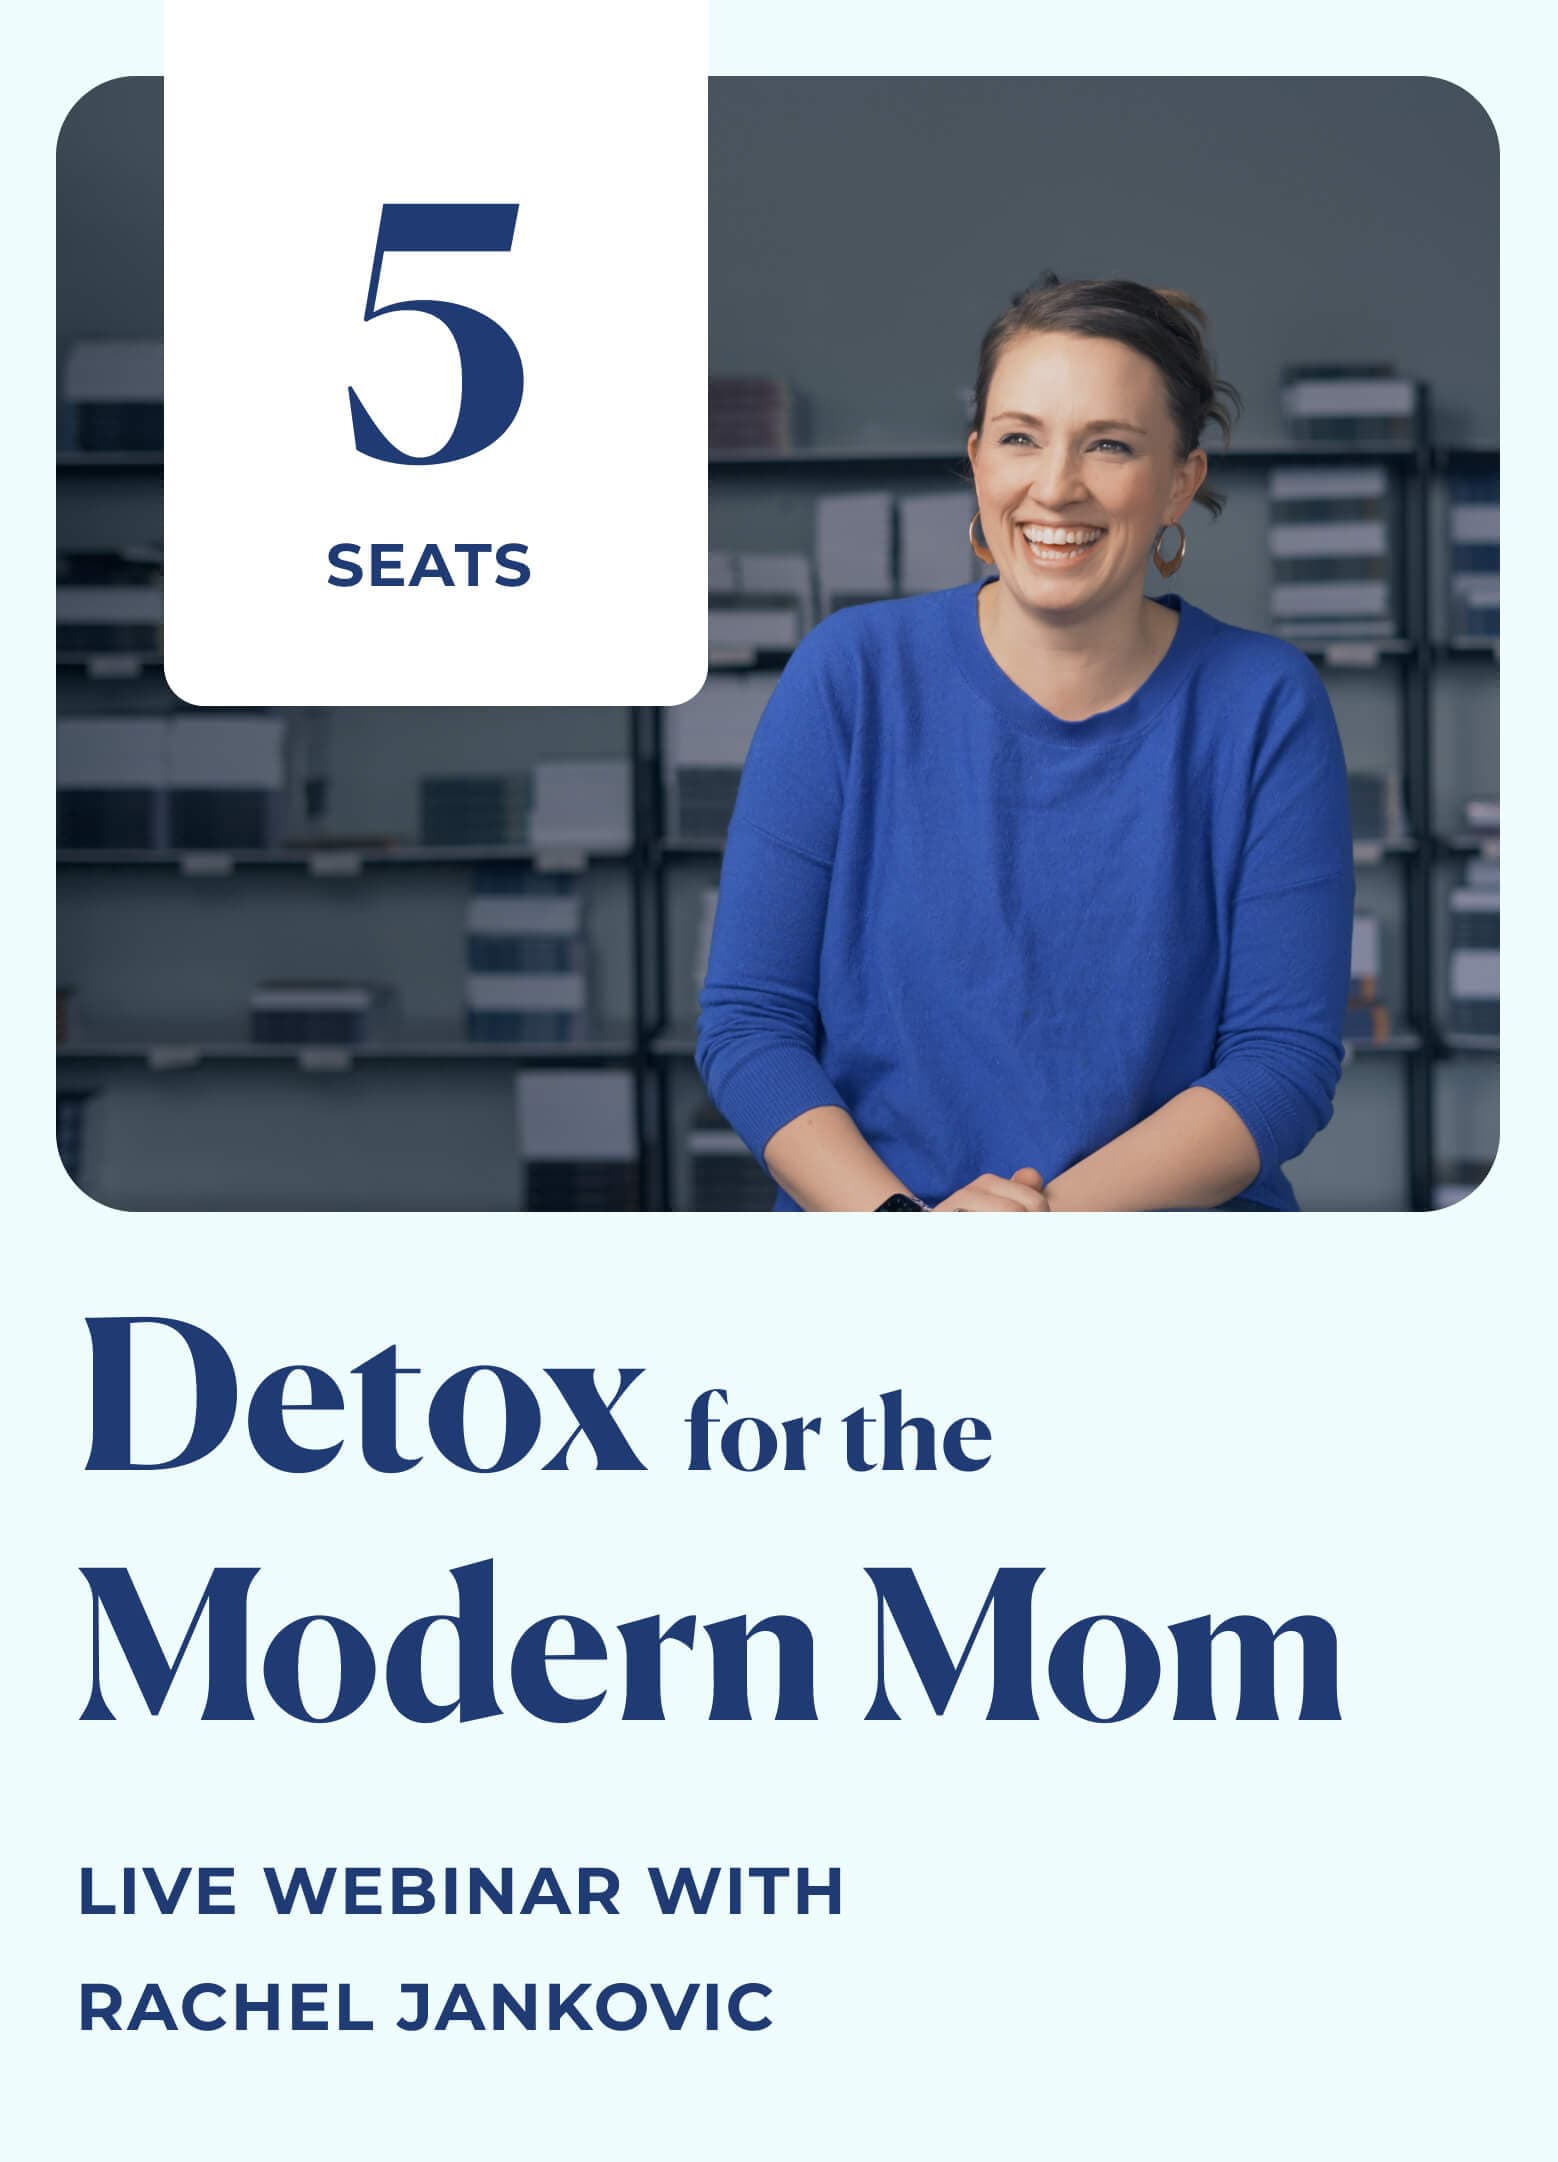 Detox for the Modern Mom - Live Webinar